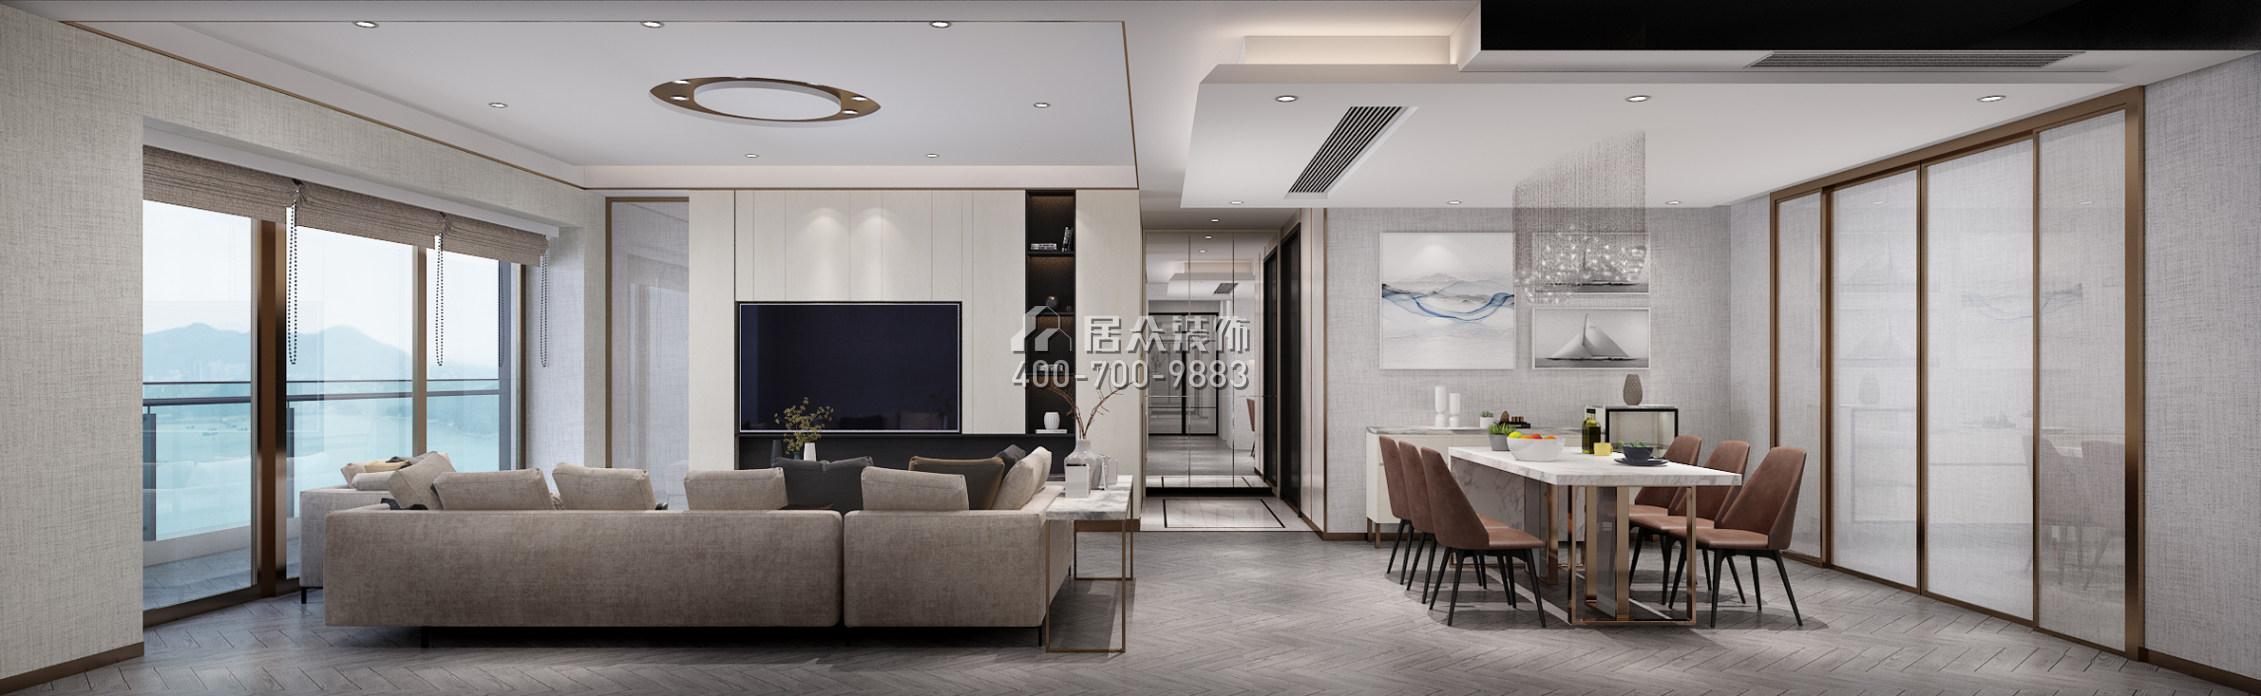 华润城润府二期206平方米现代简约风格平层户型客厅装修效果图